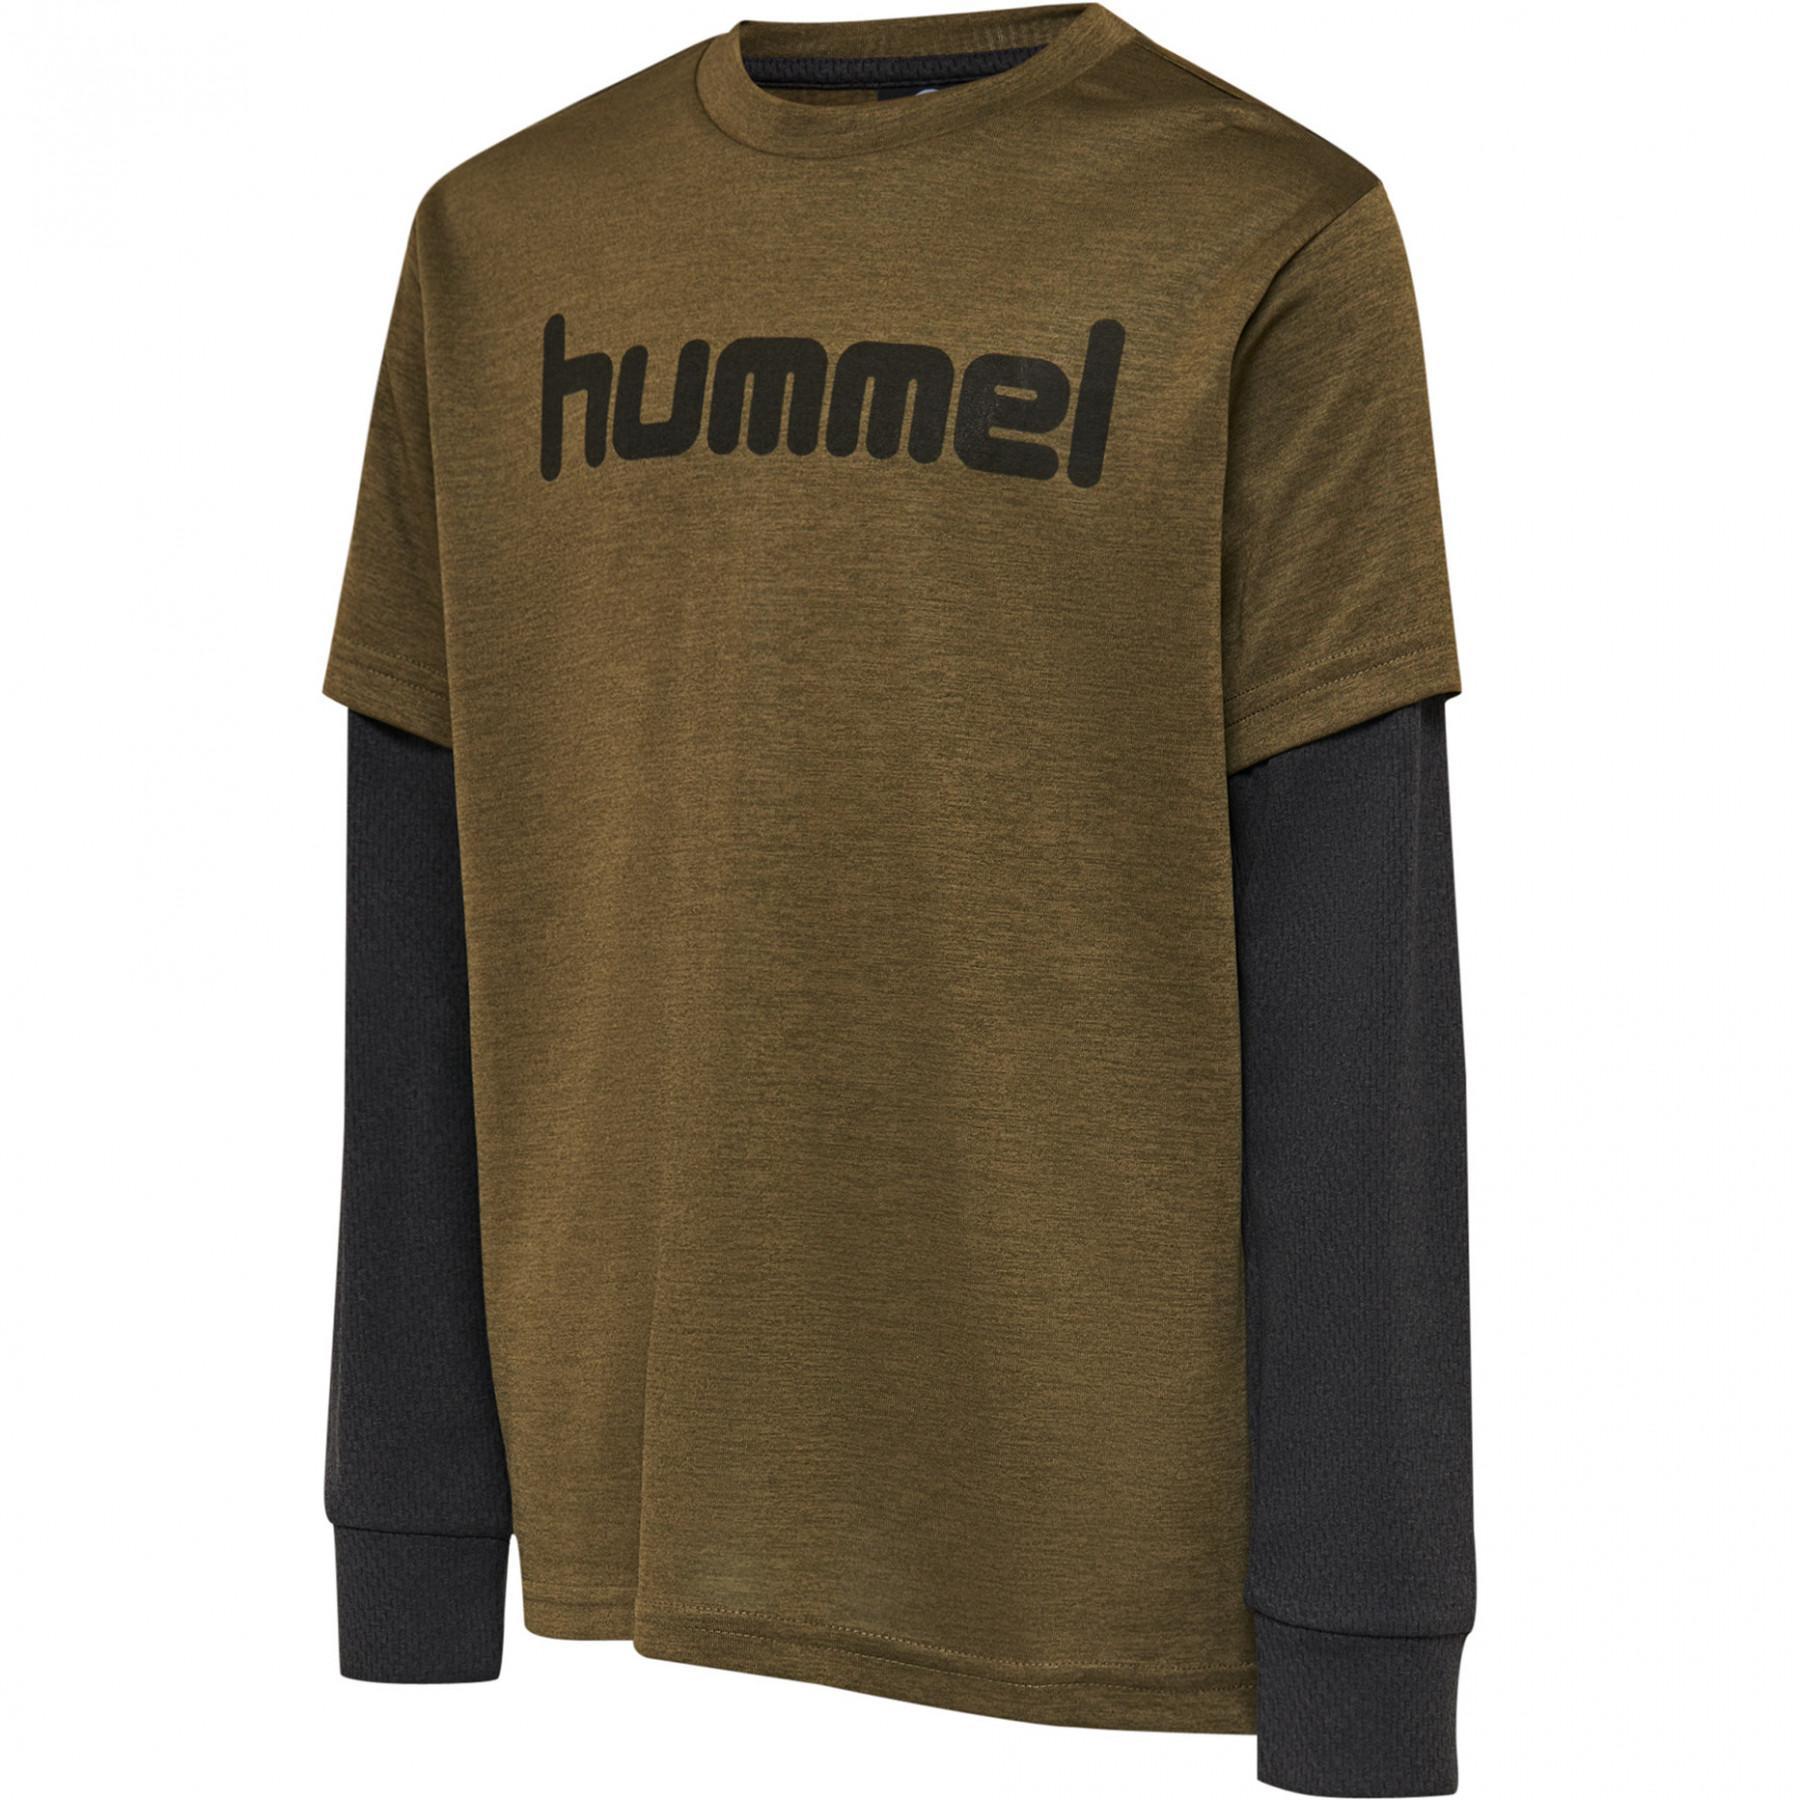 T-shirt manches longues enfant Hummel hmldylan